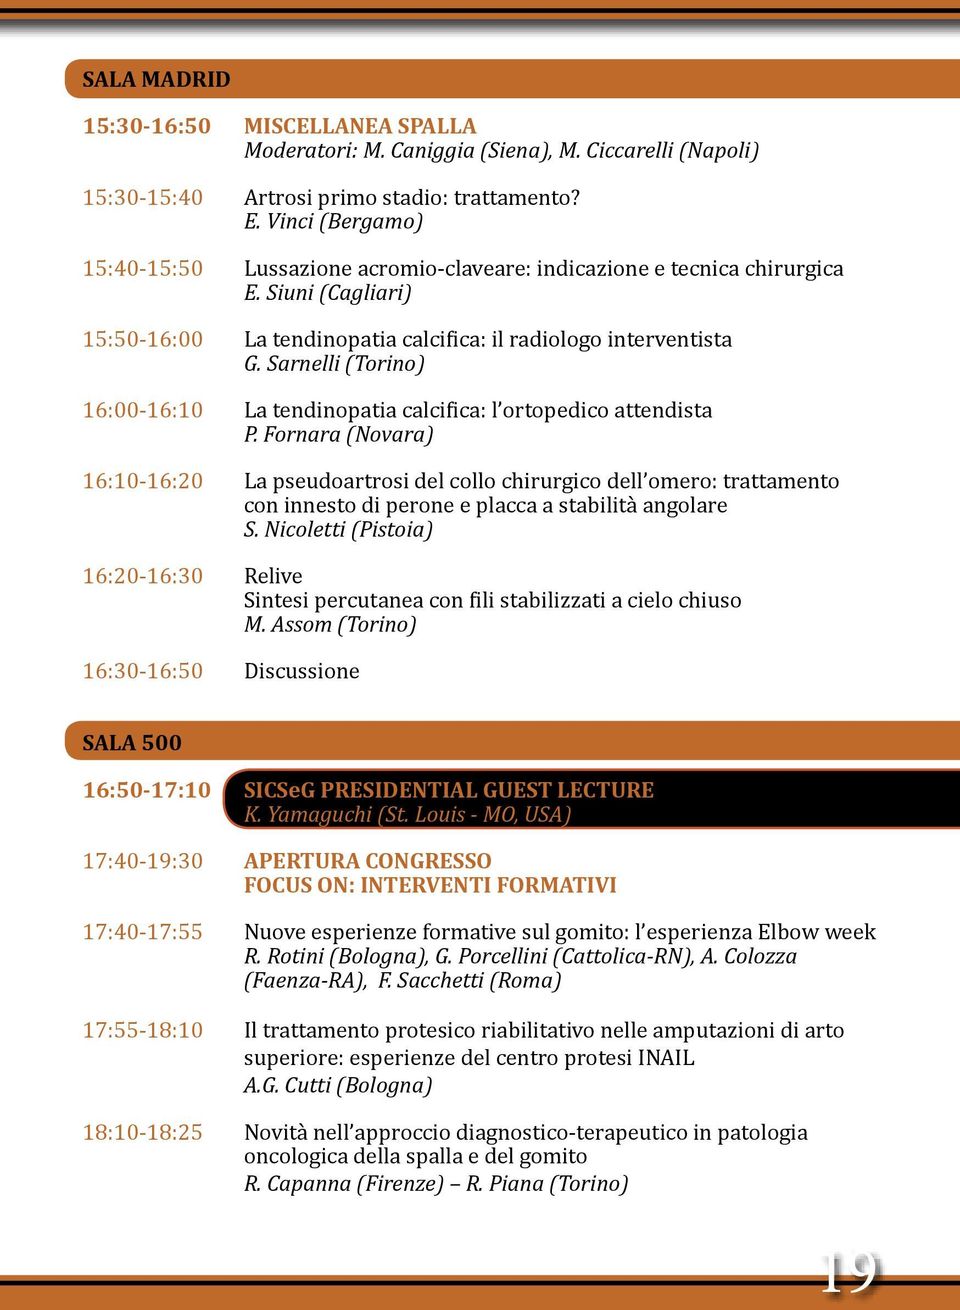 Sarnelli (Torino) 16:00-16:10 La tendinopatia calcifica: l ortopedico attendista P.